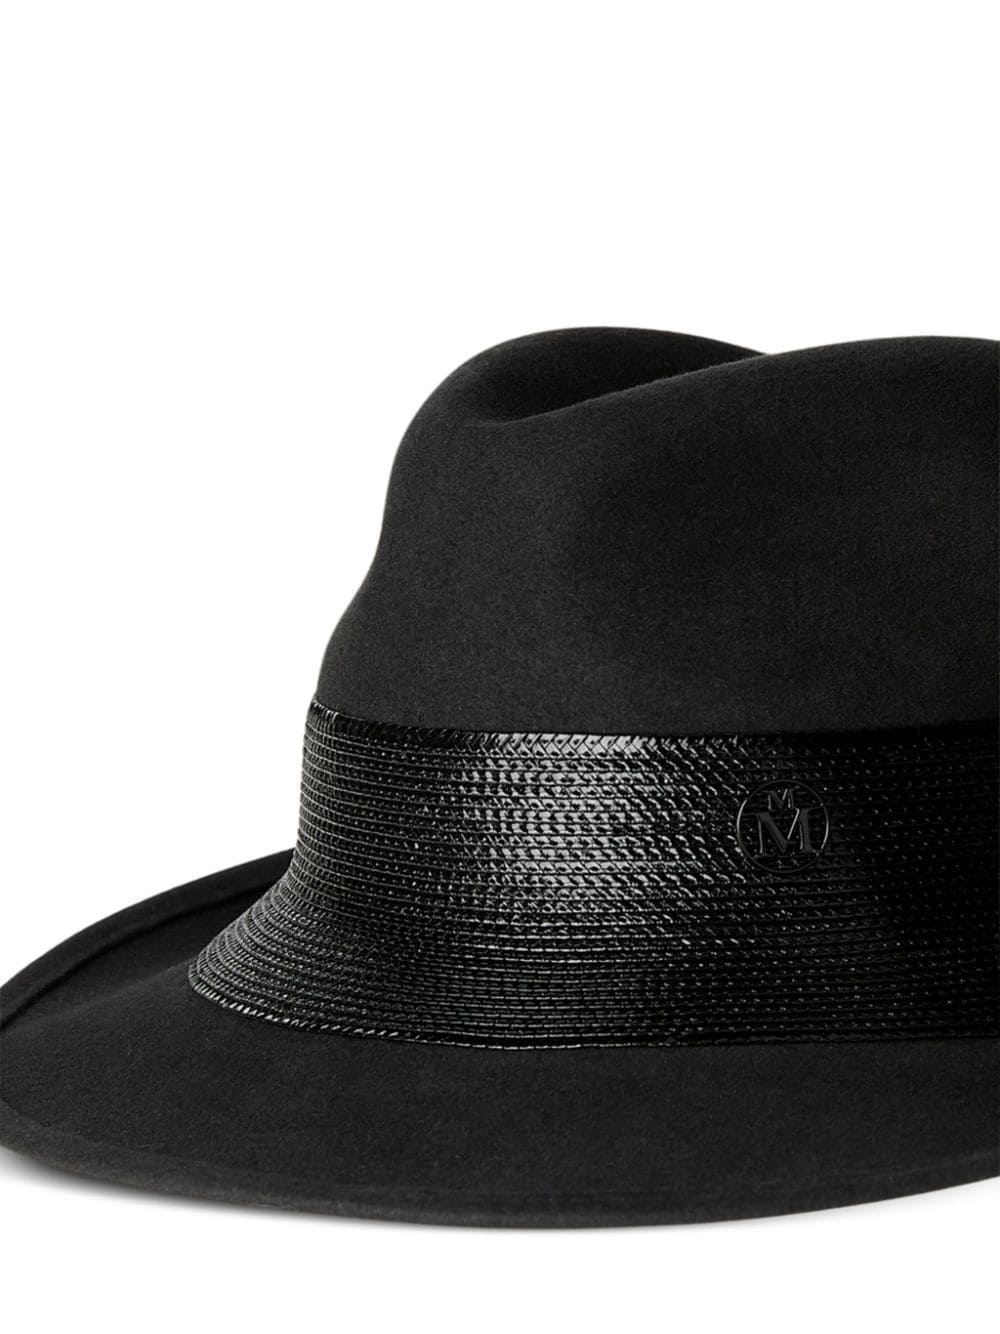 Image 2 of Maison Michel Eric fedora hat